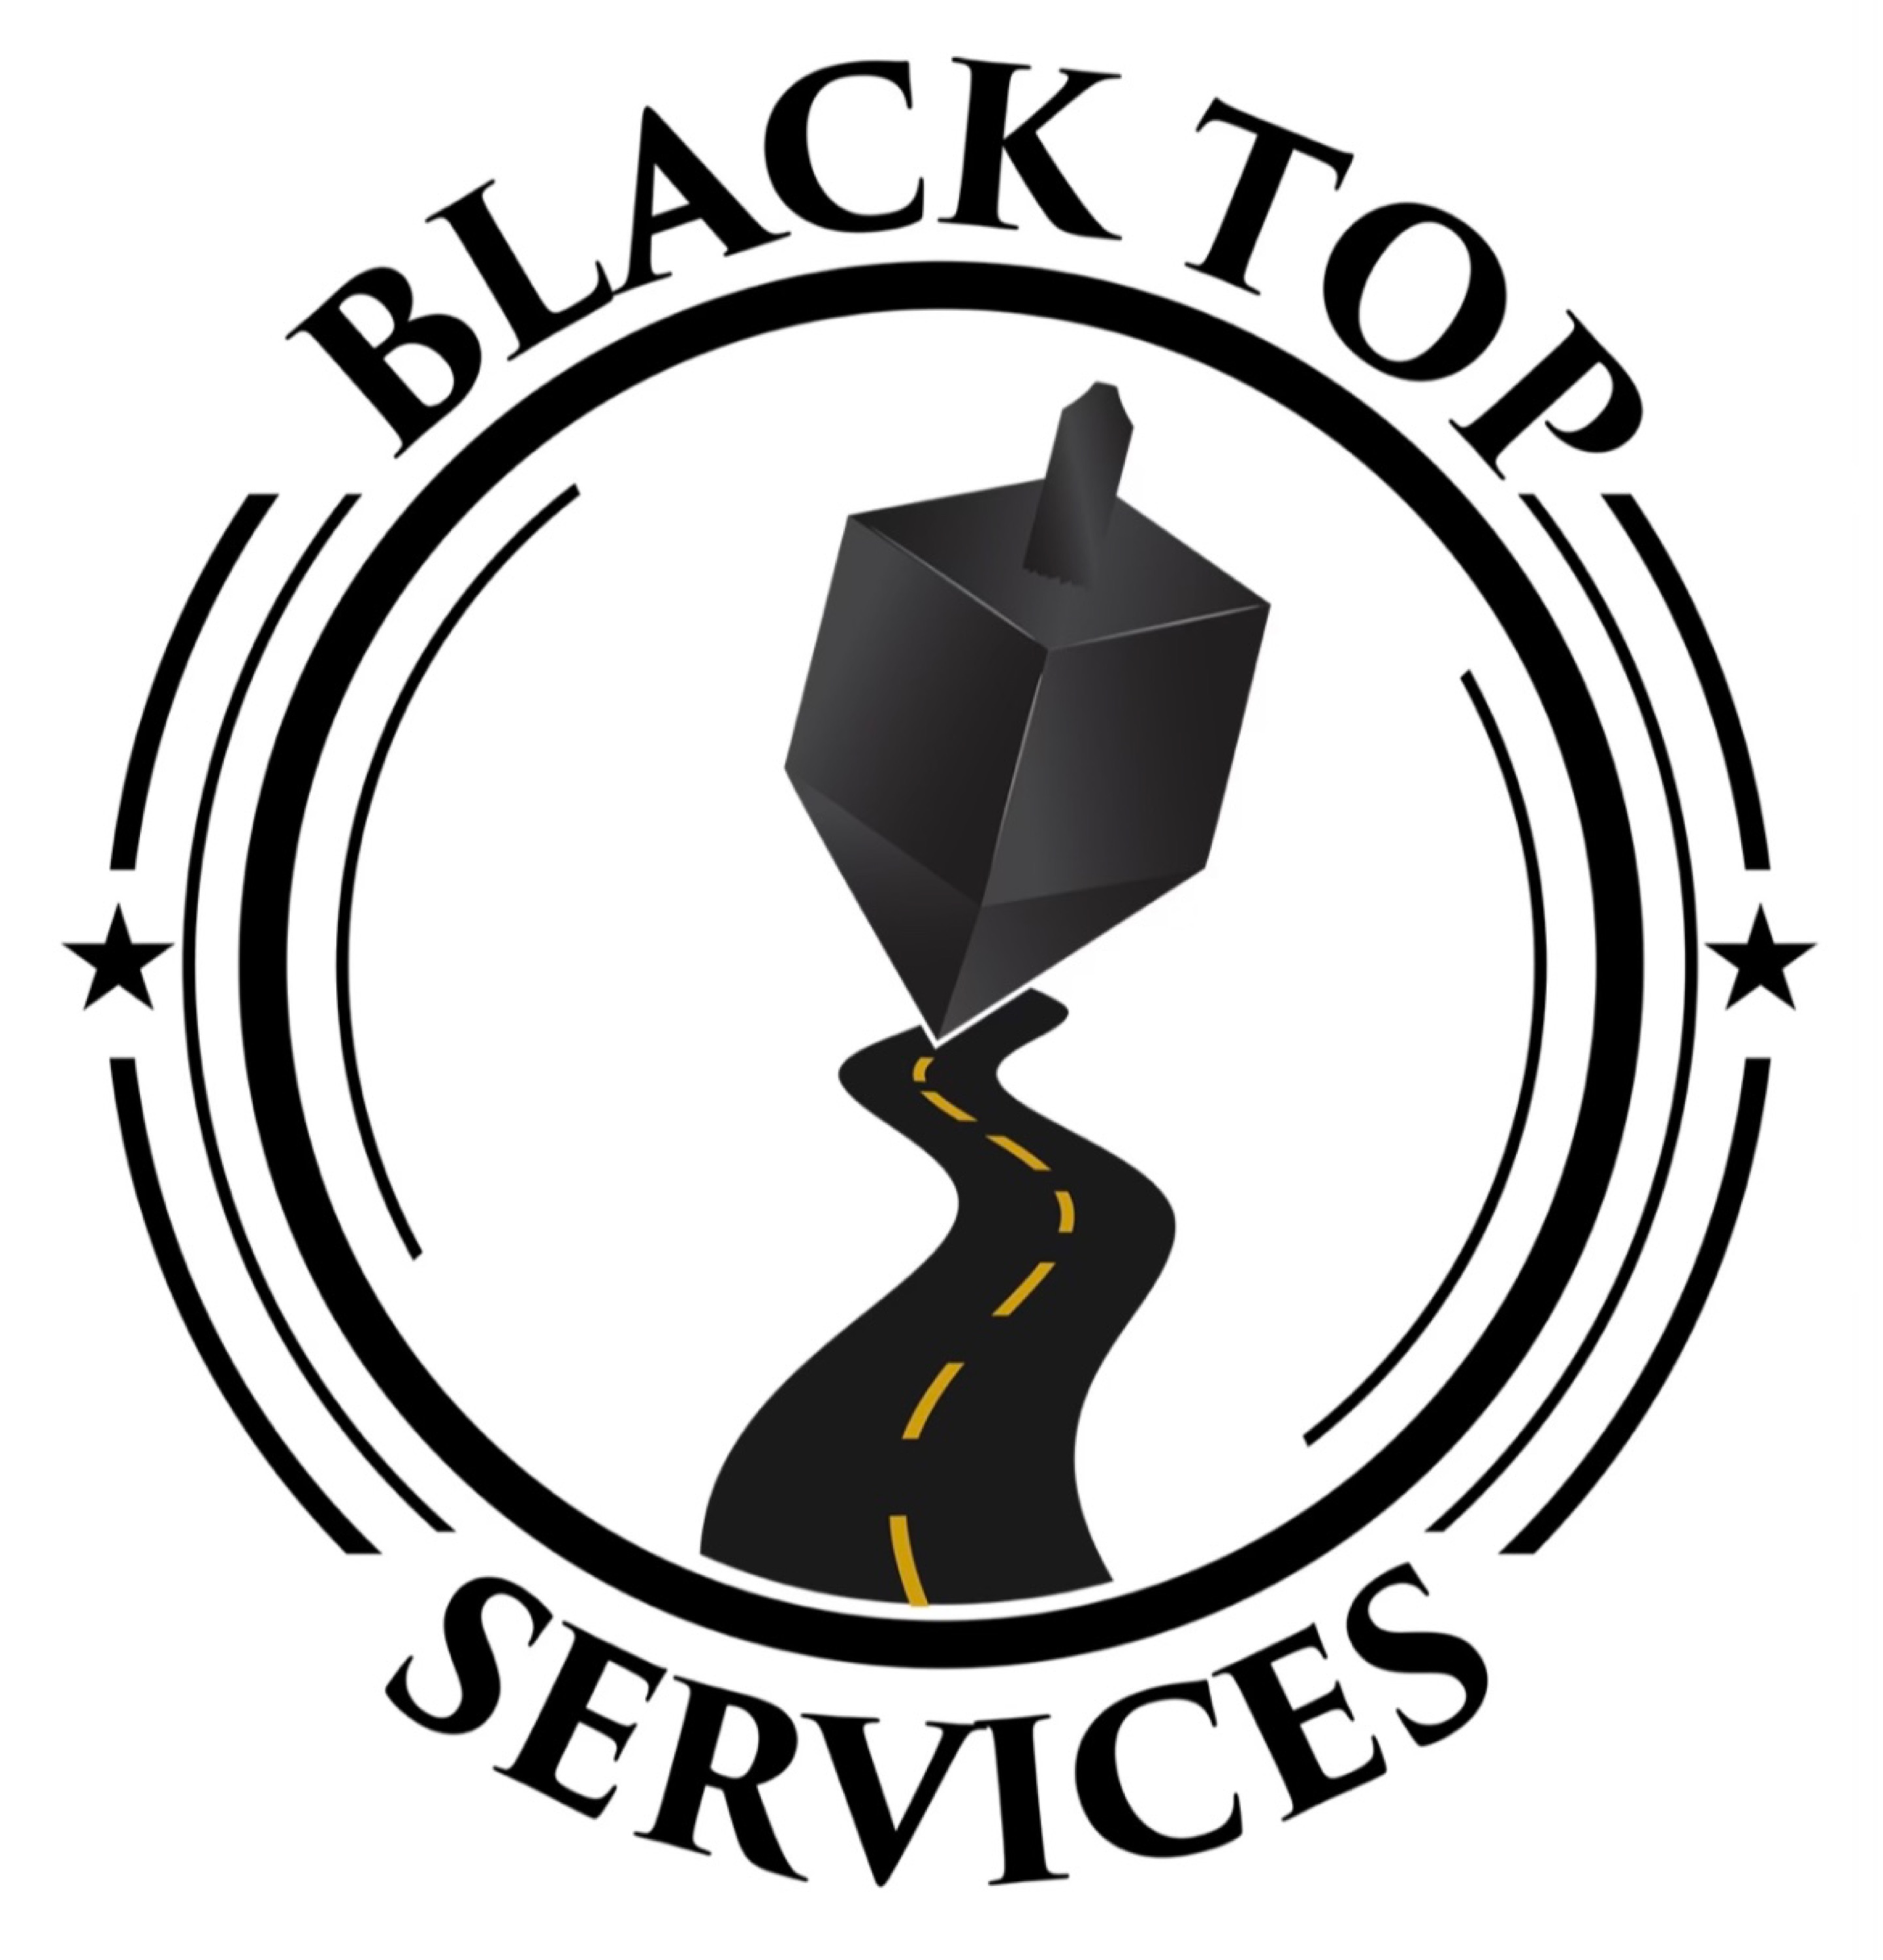 Blacktop Services Logo